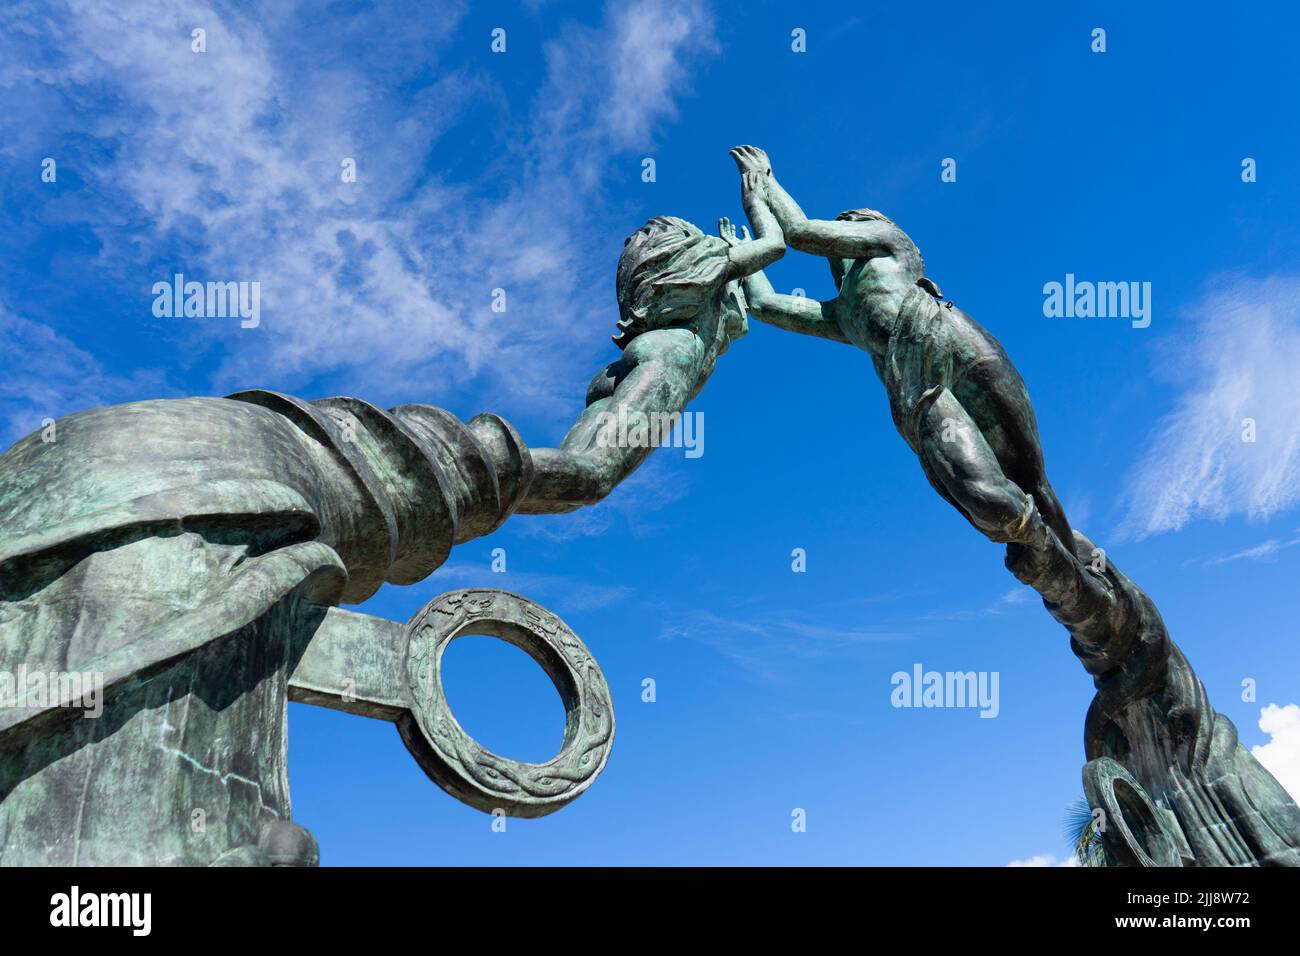 Statue de bronze contre le ciel bleu des deux amoureux à Playa del Carmen, Mexique. Photo du dessous. Statues de main Banque D'Images